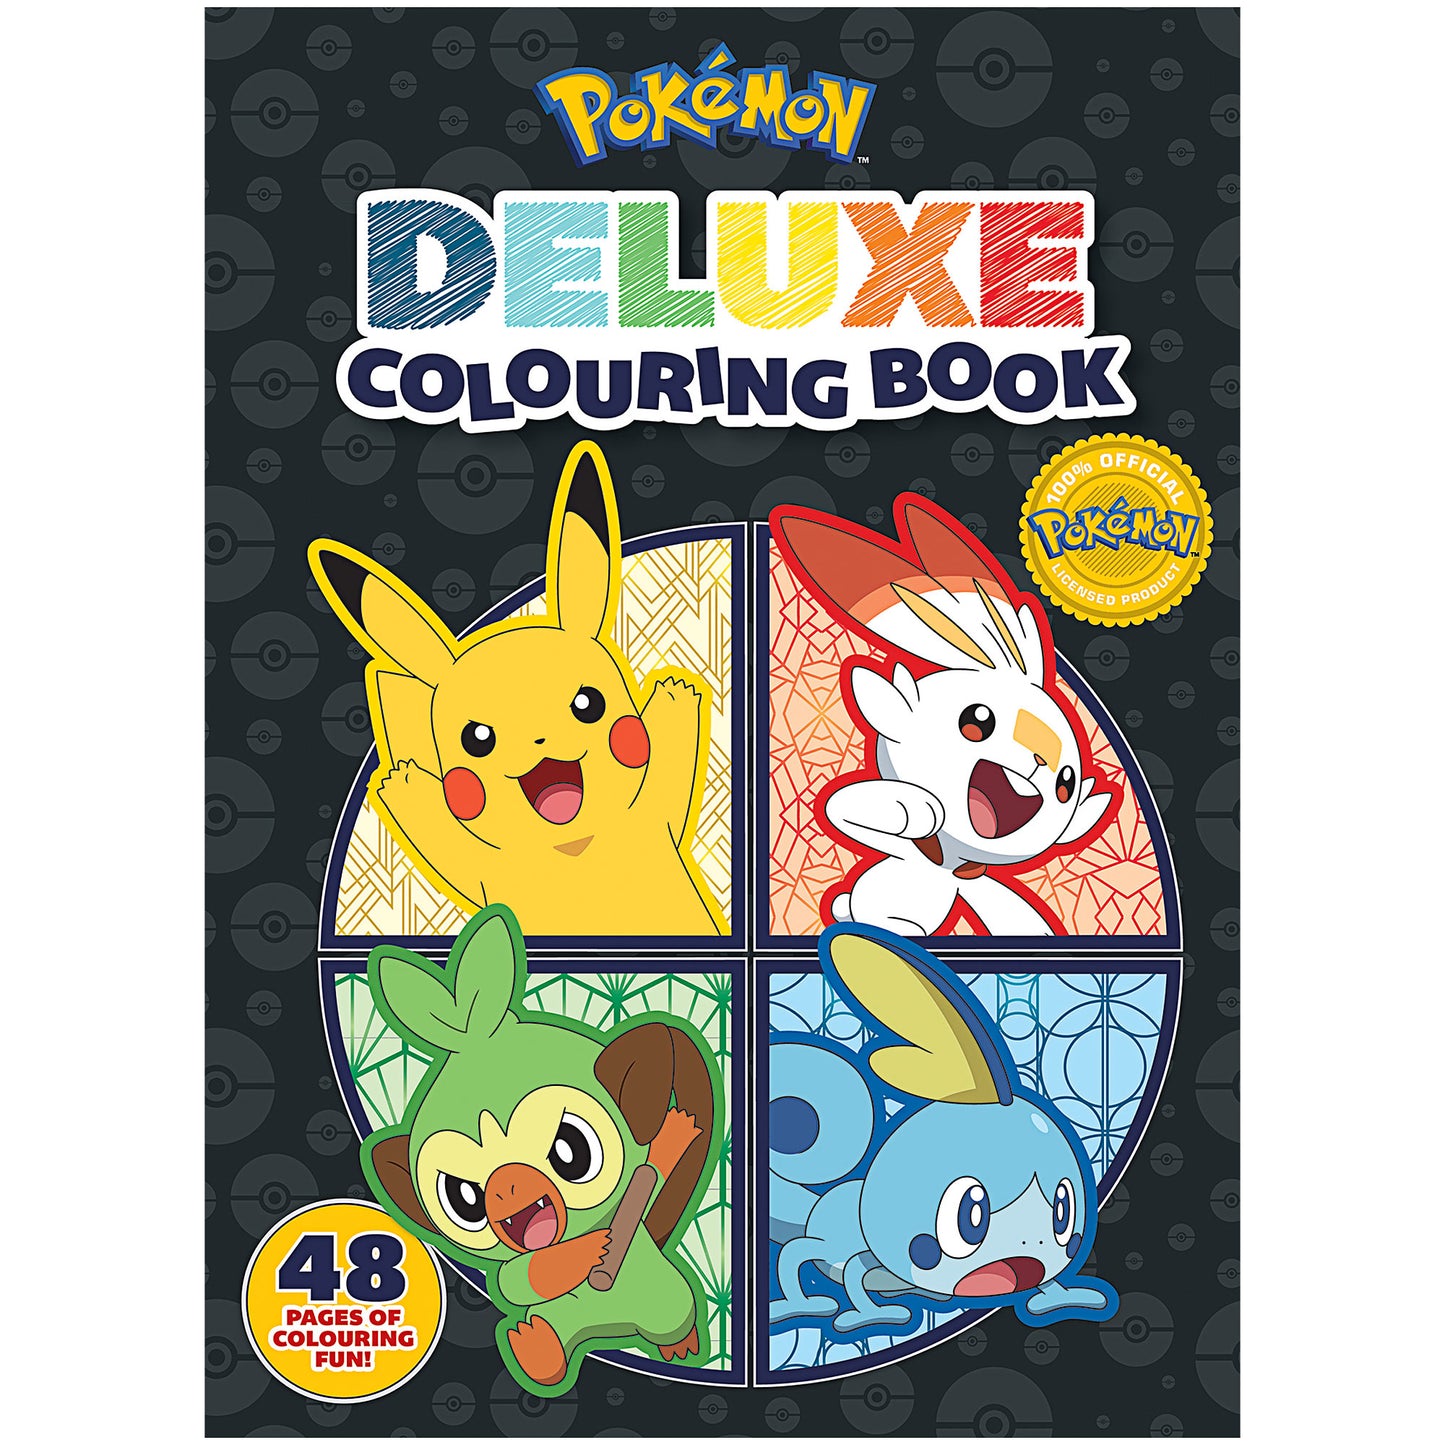 Deluxe Colouring Book Pokémon